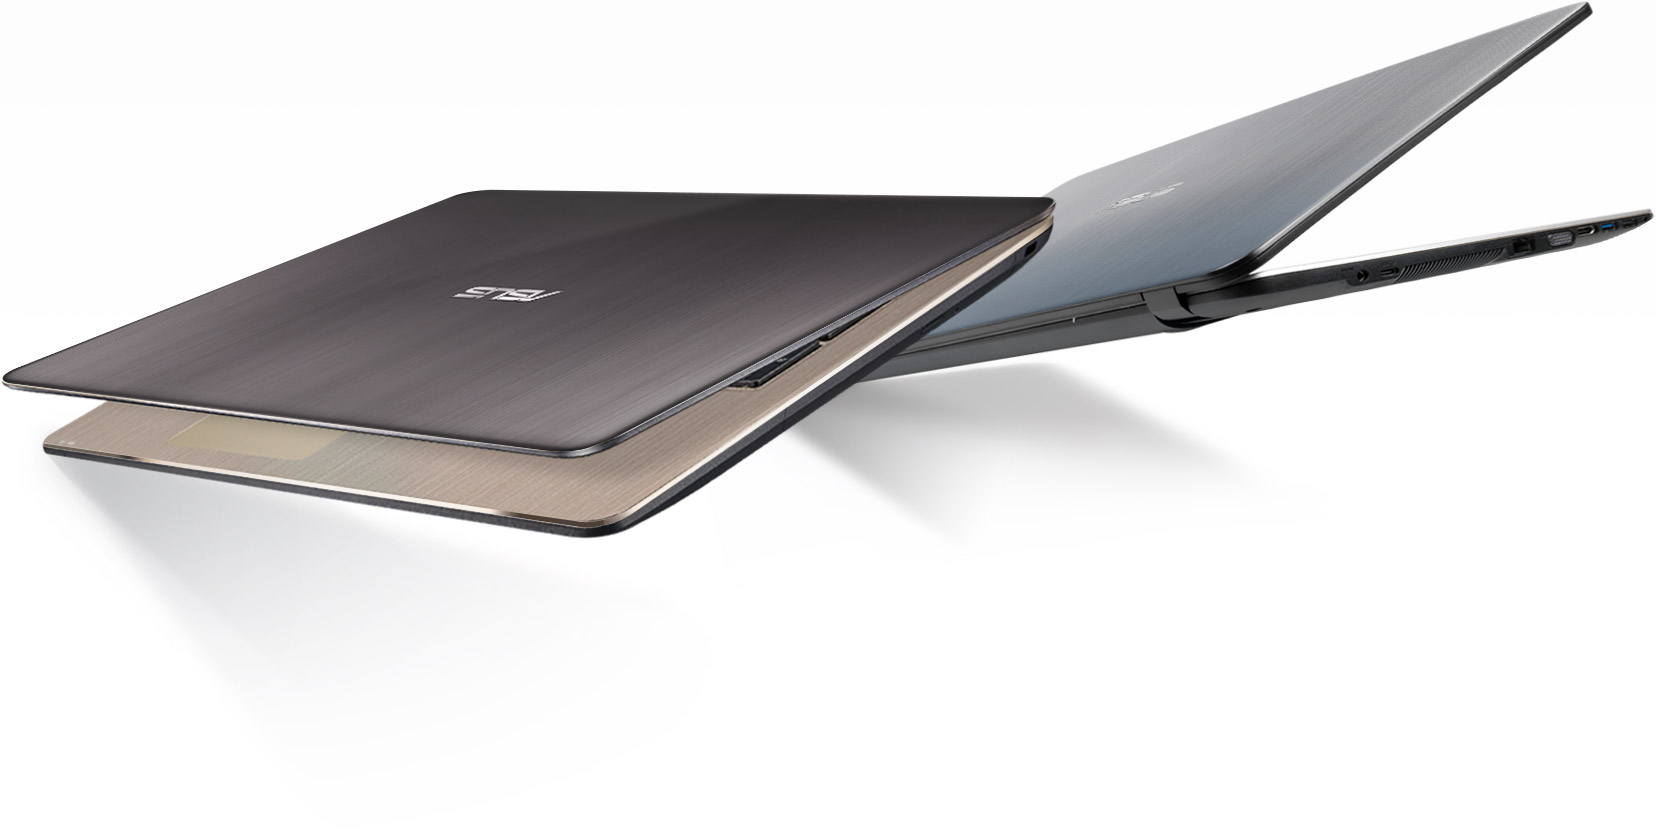 Asus Vivobook X540la Laptops Asus